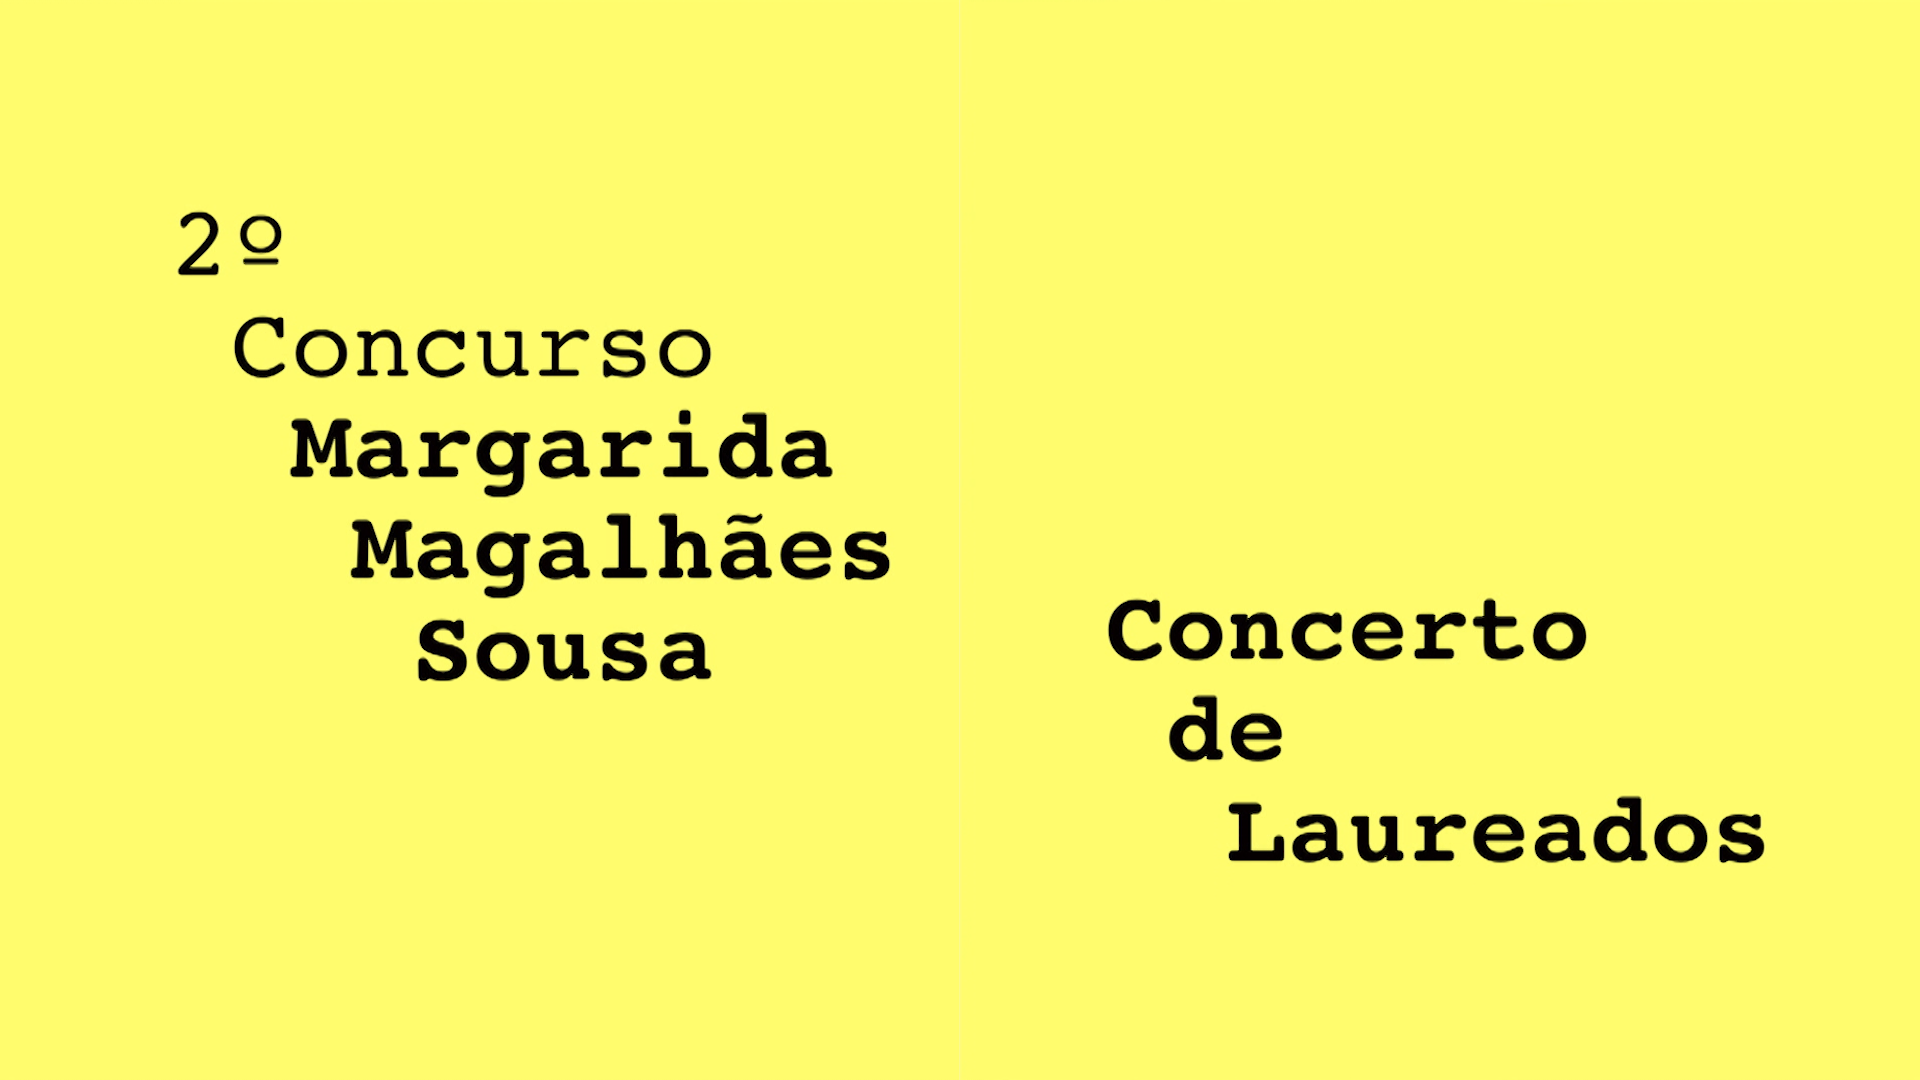 Concerto de Laureados- 2 Concurso Margarida Magalhes Sousa